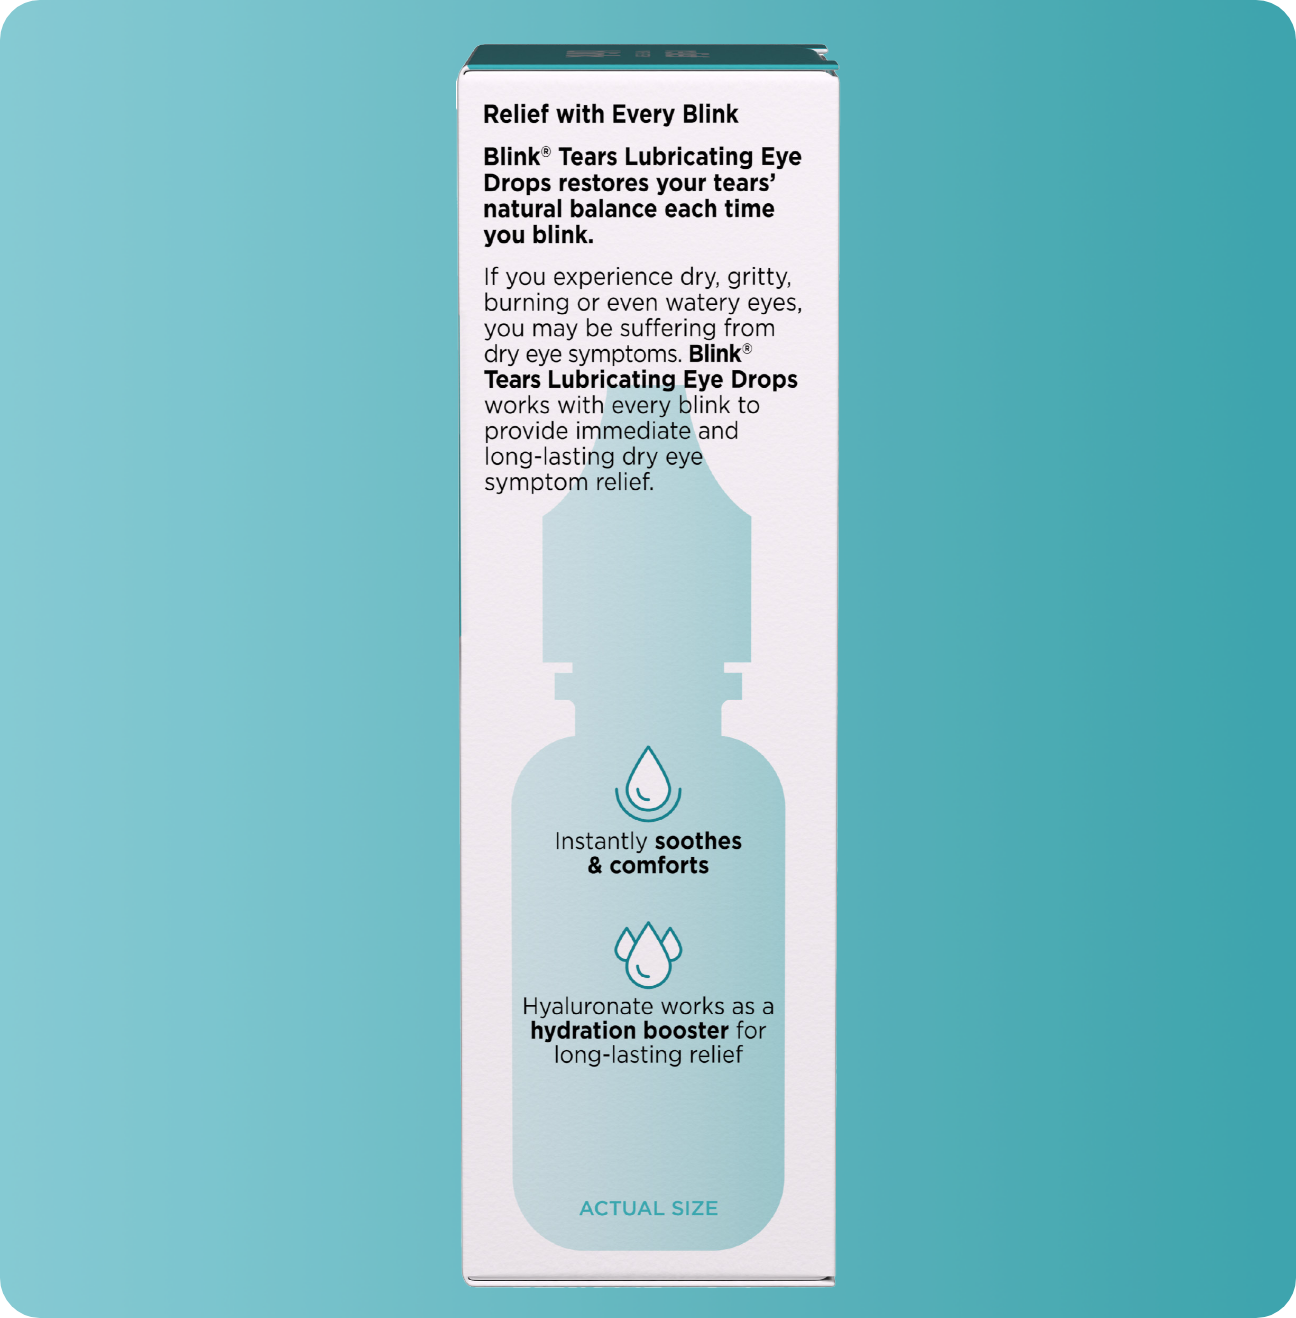 Blink Tears carton with product summary